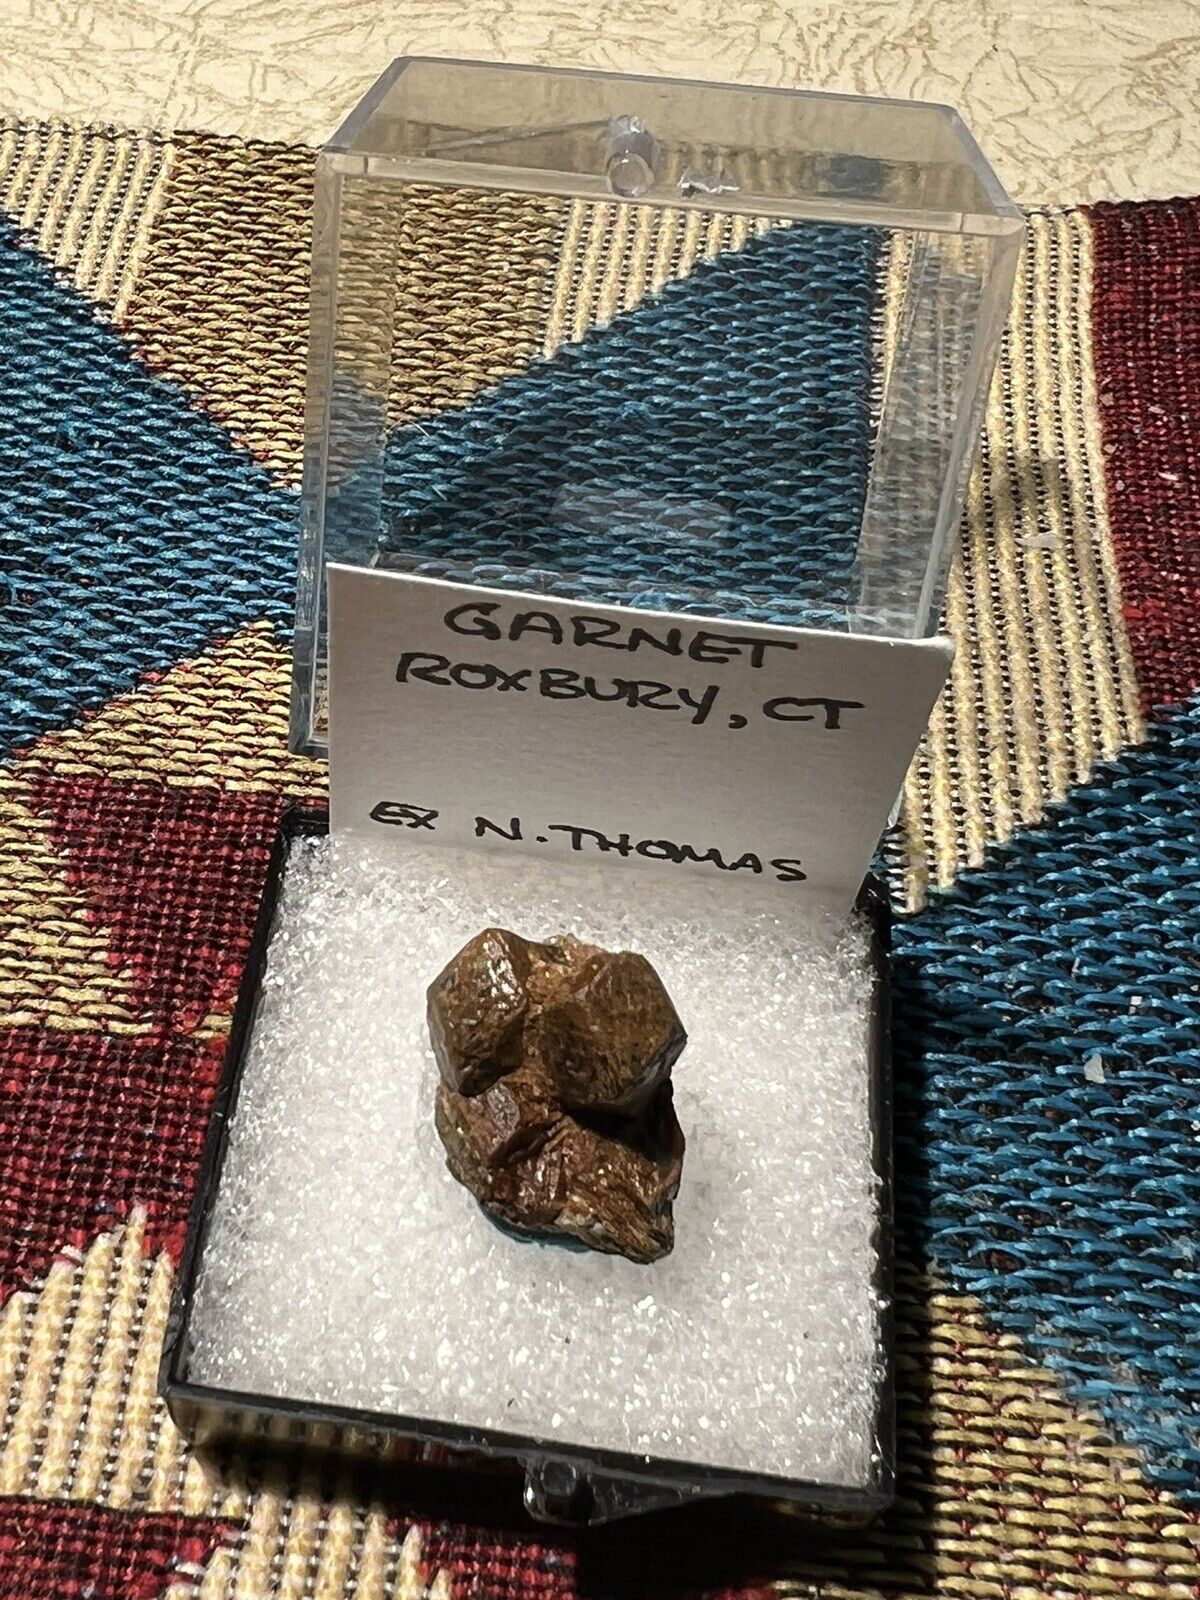 Garnet crystal, Greens Farm locality, Roxbury, CT